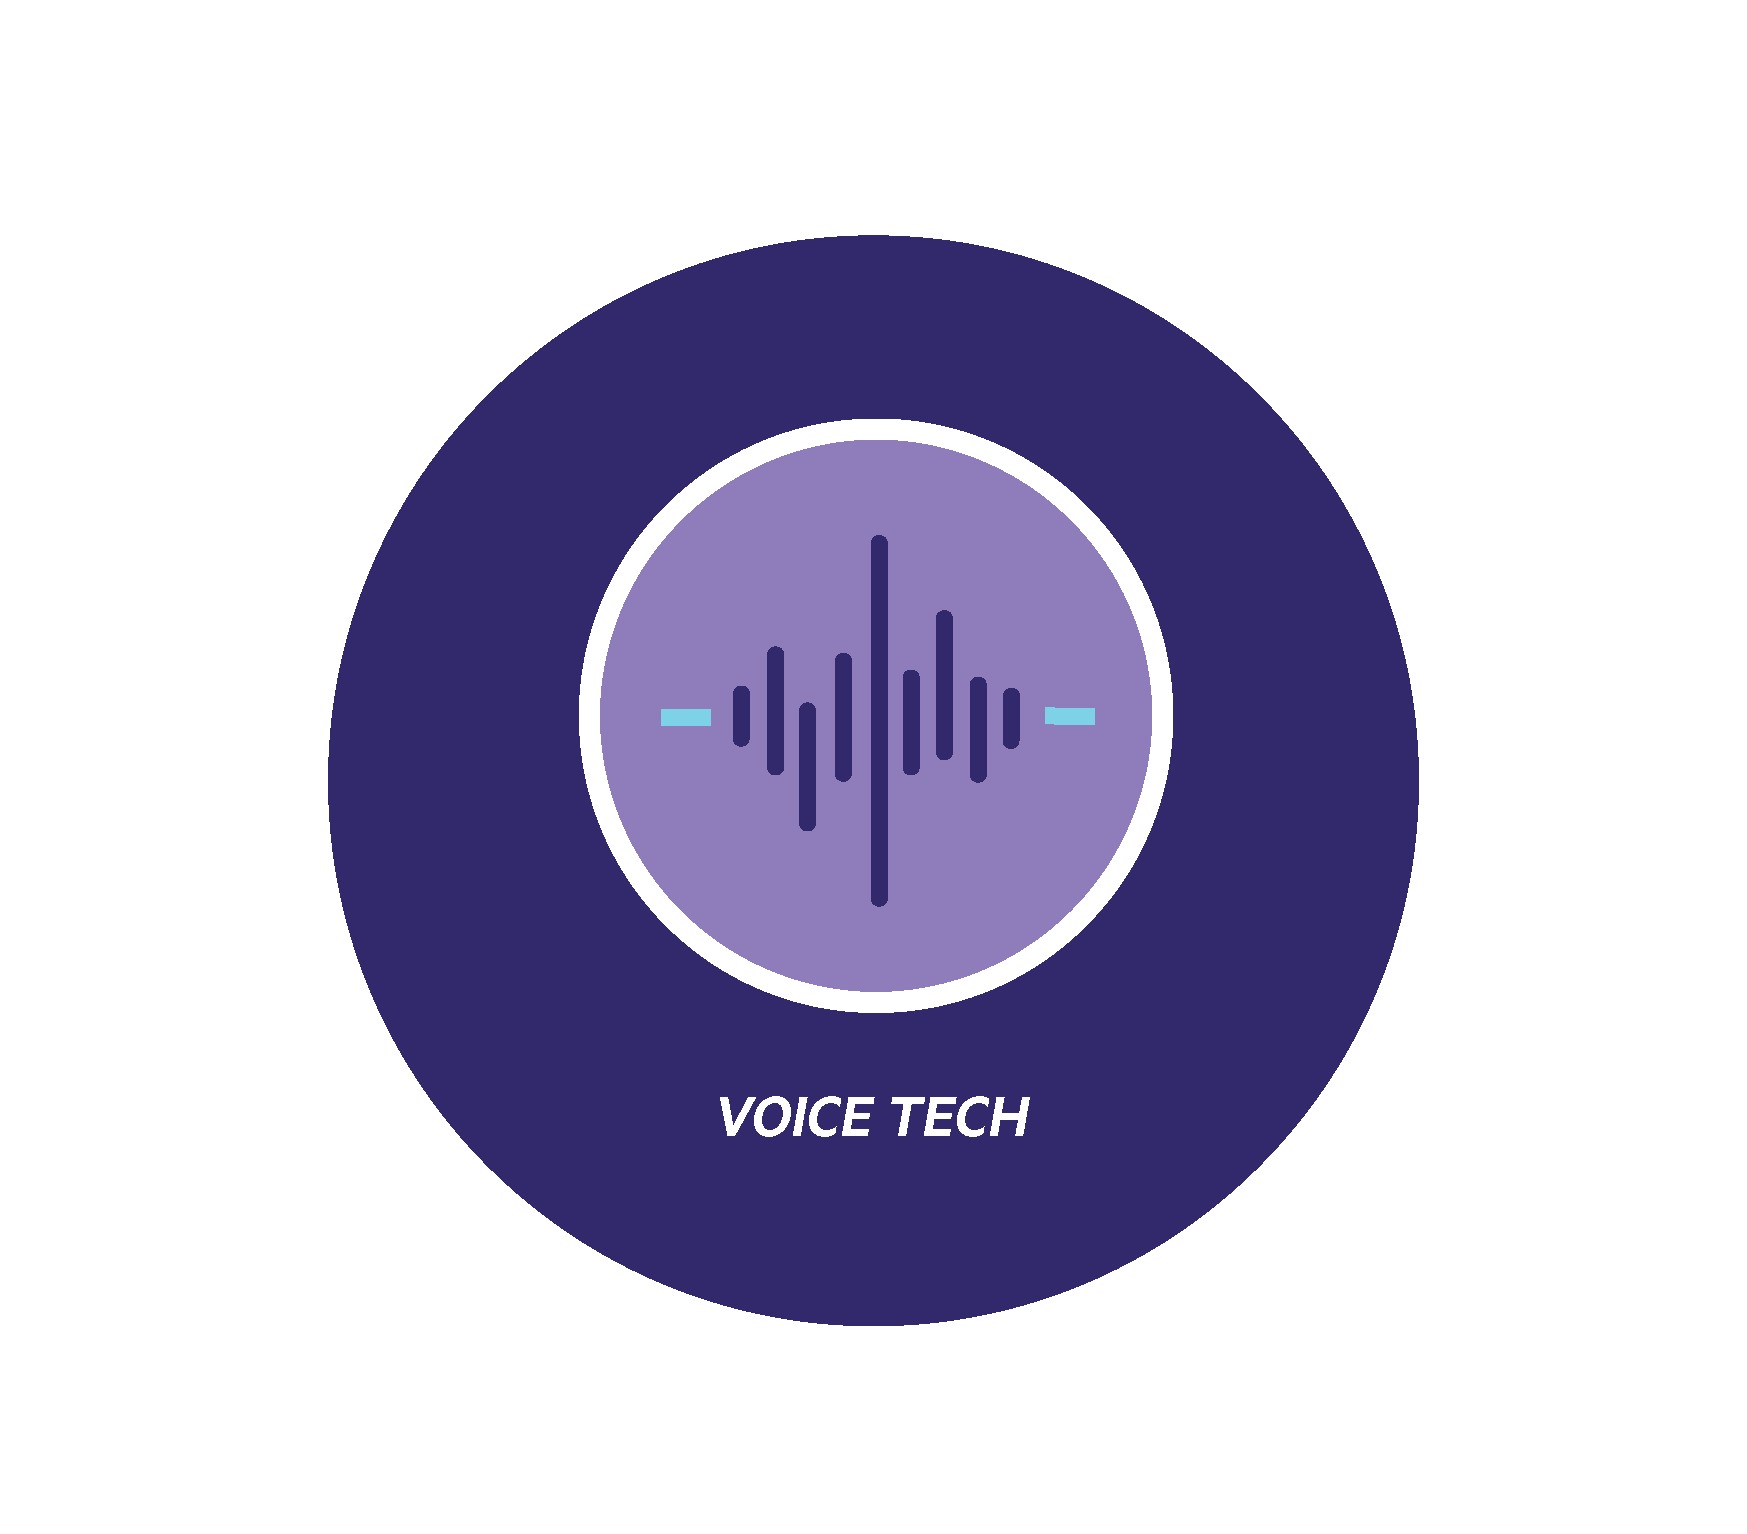 Voice Tech